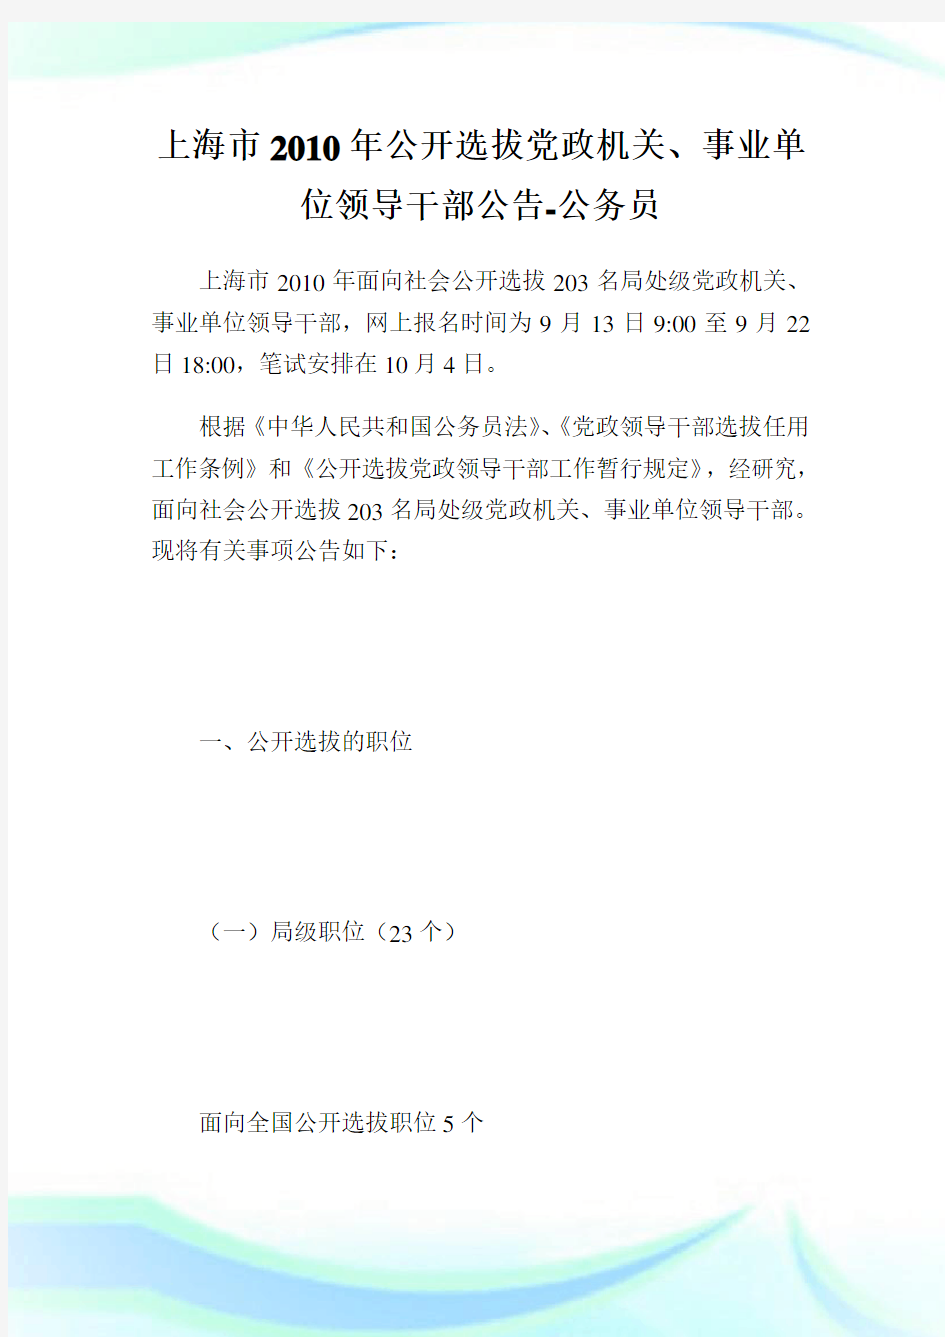 上海市公开选拔党政机关、事业单位领导干部公告-公务员.doc